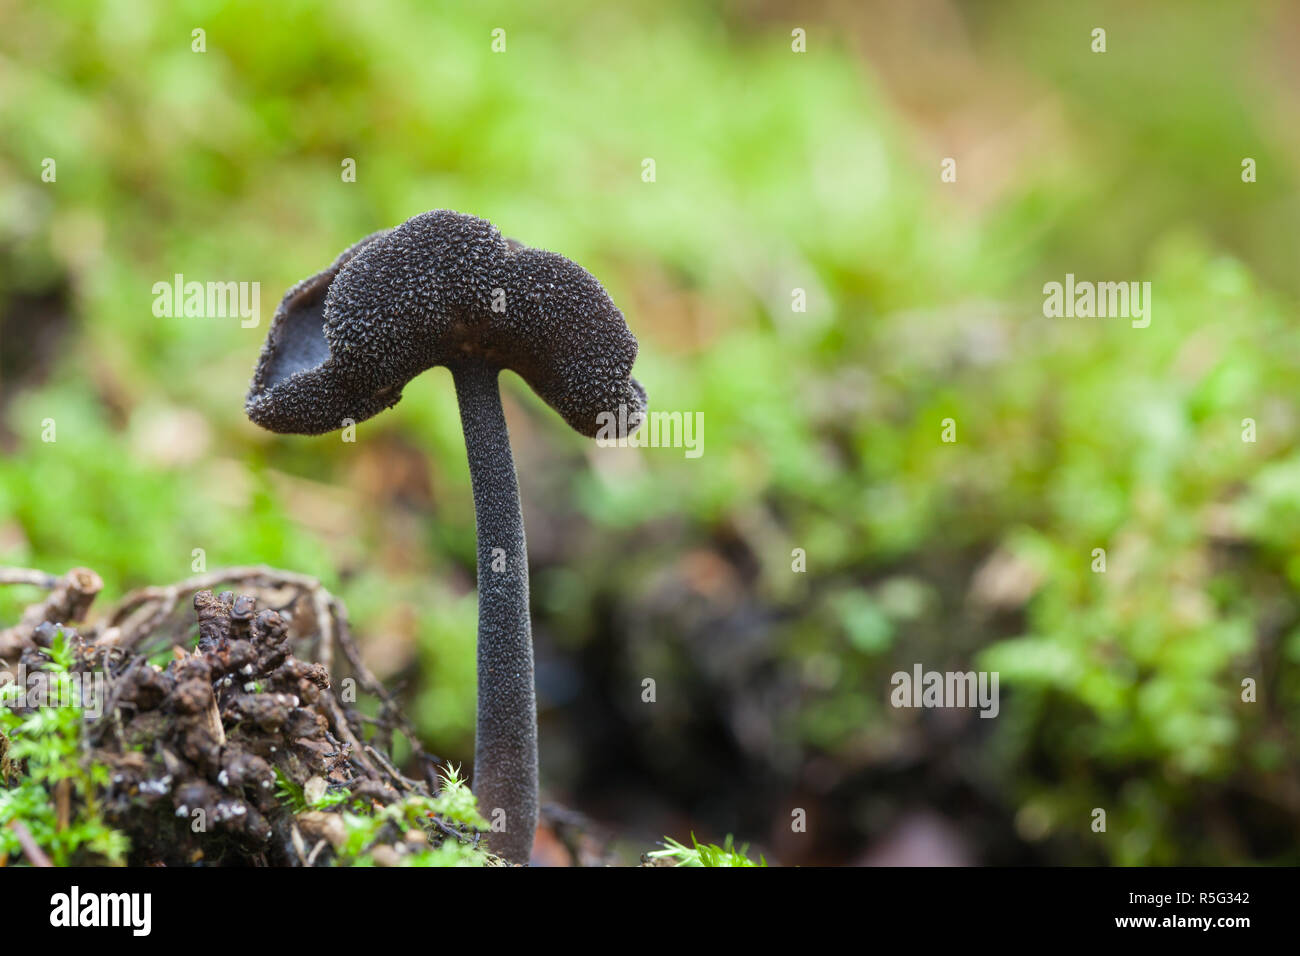 Black saddle fungus Stock Photo